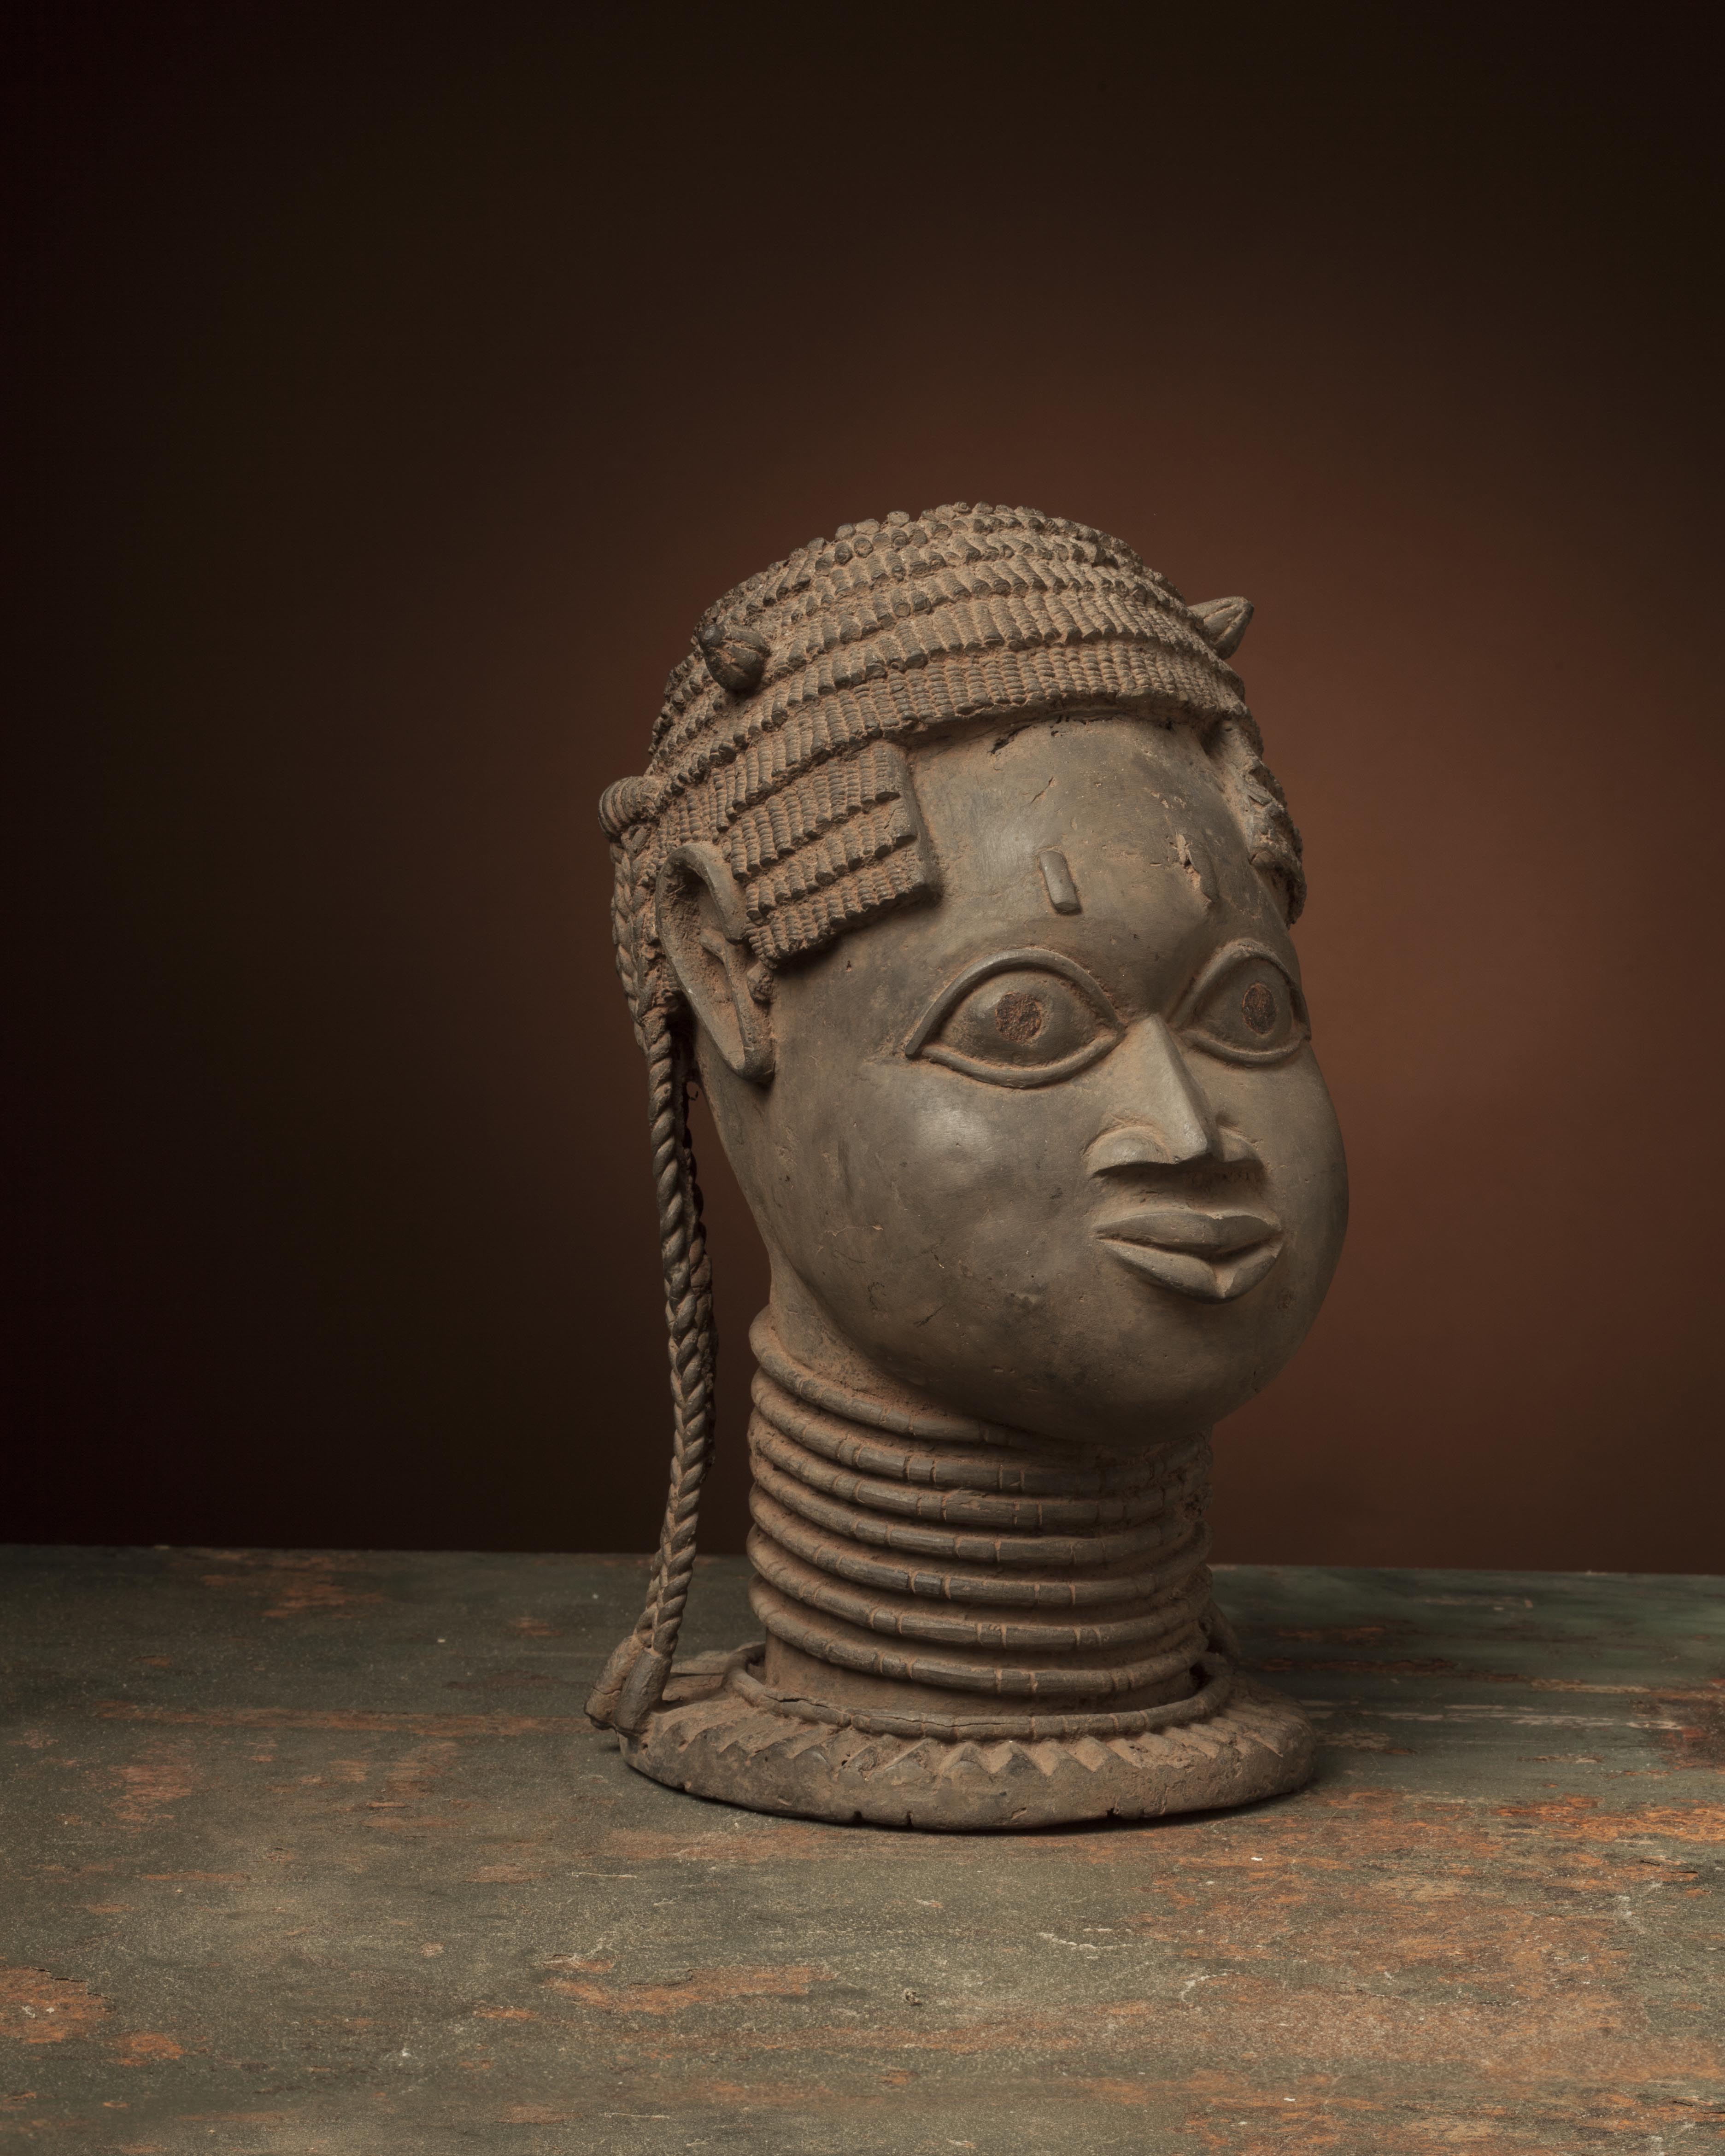 br. Bénin (tête), d`afrique : Benin, statuette br. Bénin (tête), masque ancien africain br. Bénin (tête), art du Benin - Art Africain, collection privées Belgique. Statue africaine de la tribu des br. Bénin (tête), provenant du Benin, 1187/4427.Tête en bronze du Bénin(XVIe siècle)de style particulier appelé UDO,du nom de la chefferie où trois têtes furent trouvées.Cette tête,assez grossière est percé d